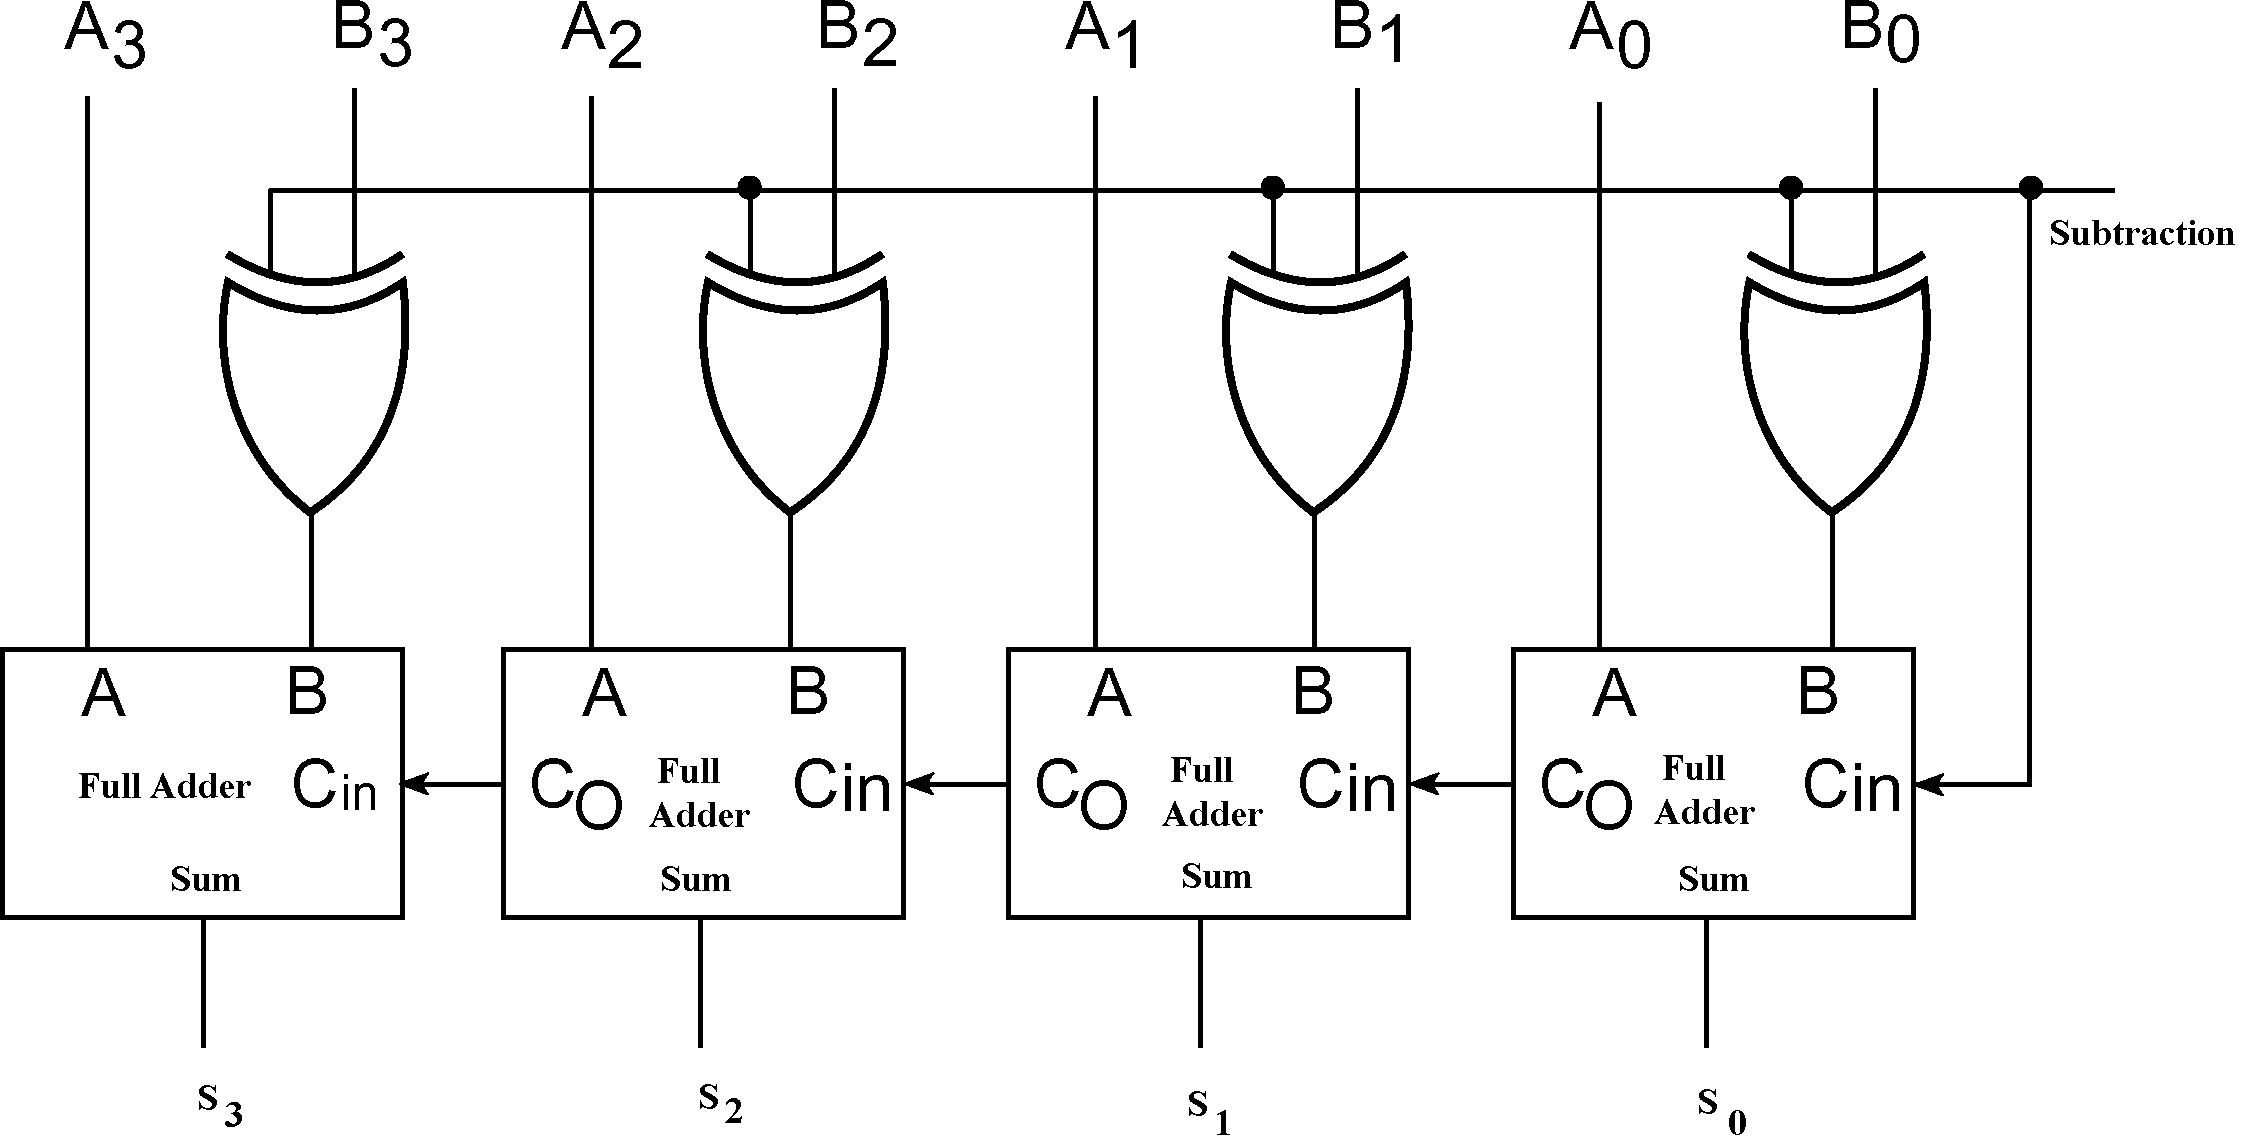 Full Adder Subtractor Circuit Diagram